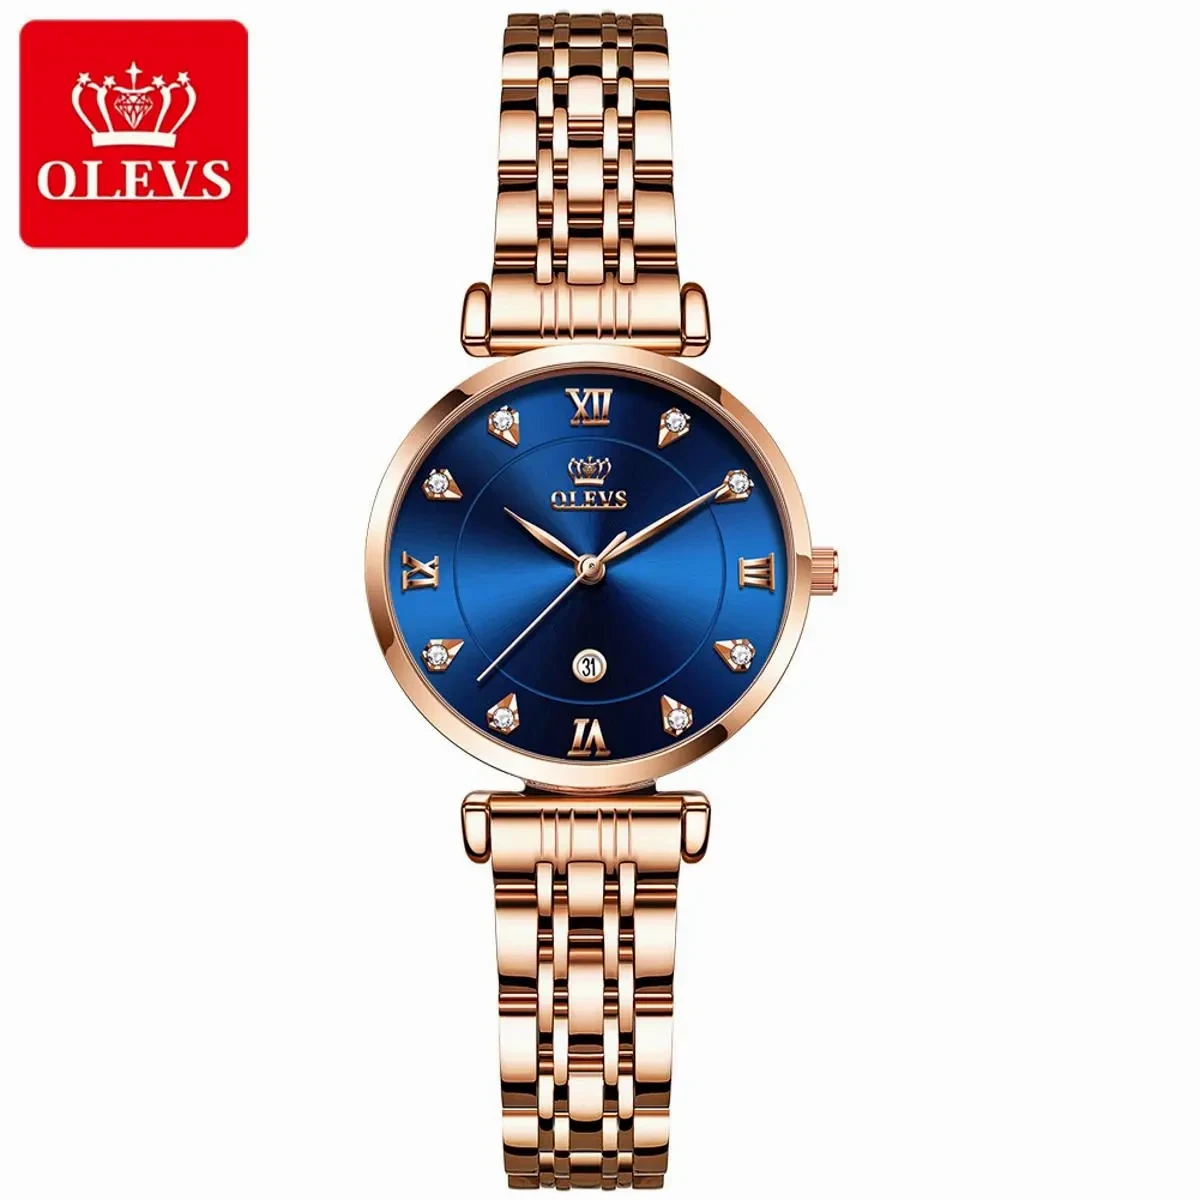 OLEVS WATCH MODEL 5866  Stainless Steel Analoge Wrist Watch For Women Olevs Model 5866  Golden Chain Dial Blue Watch